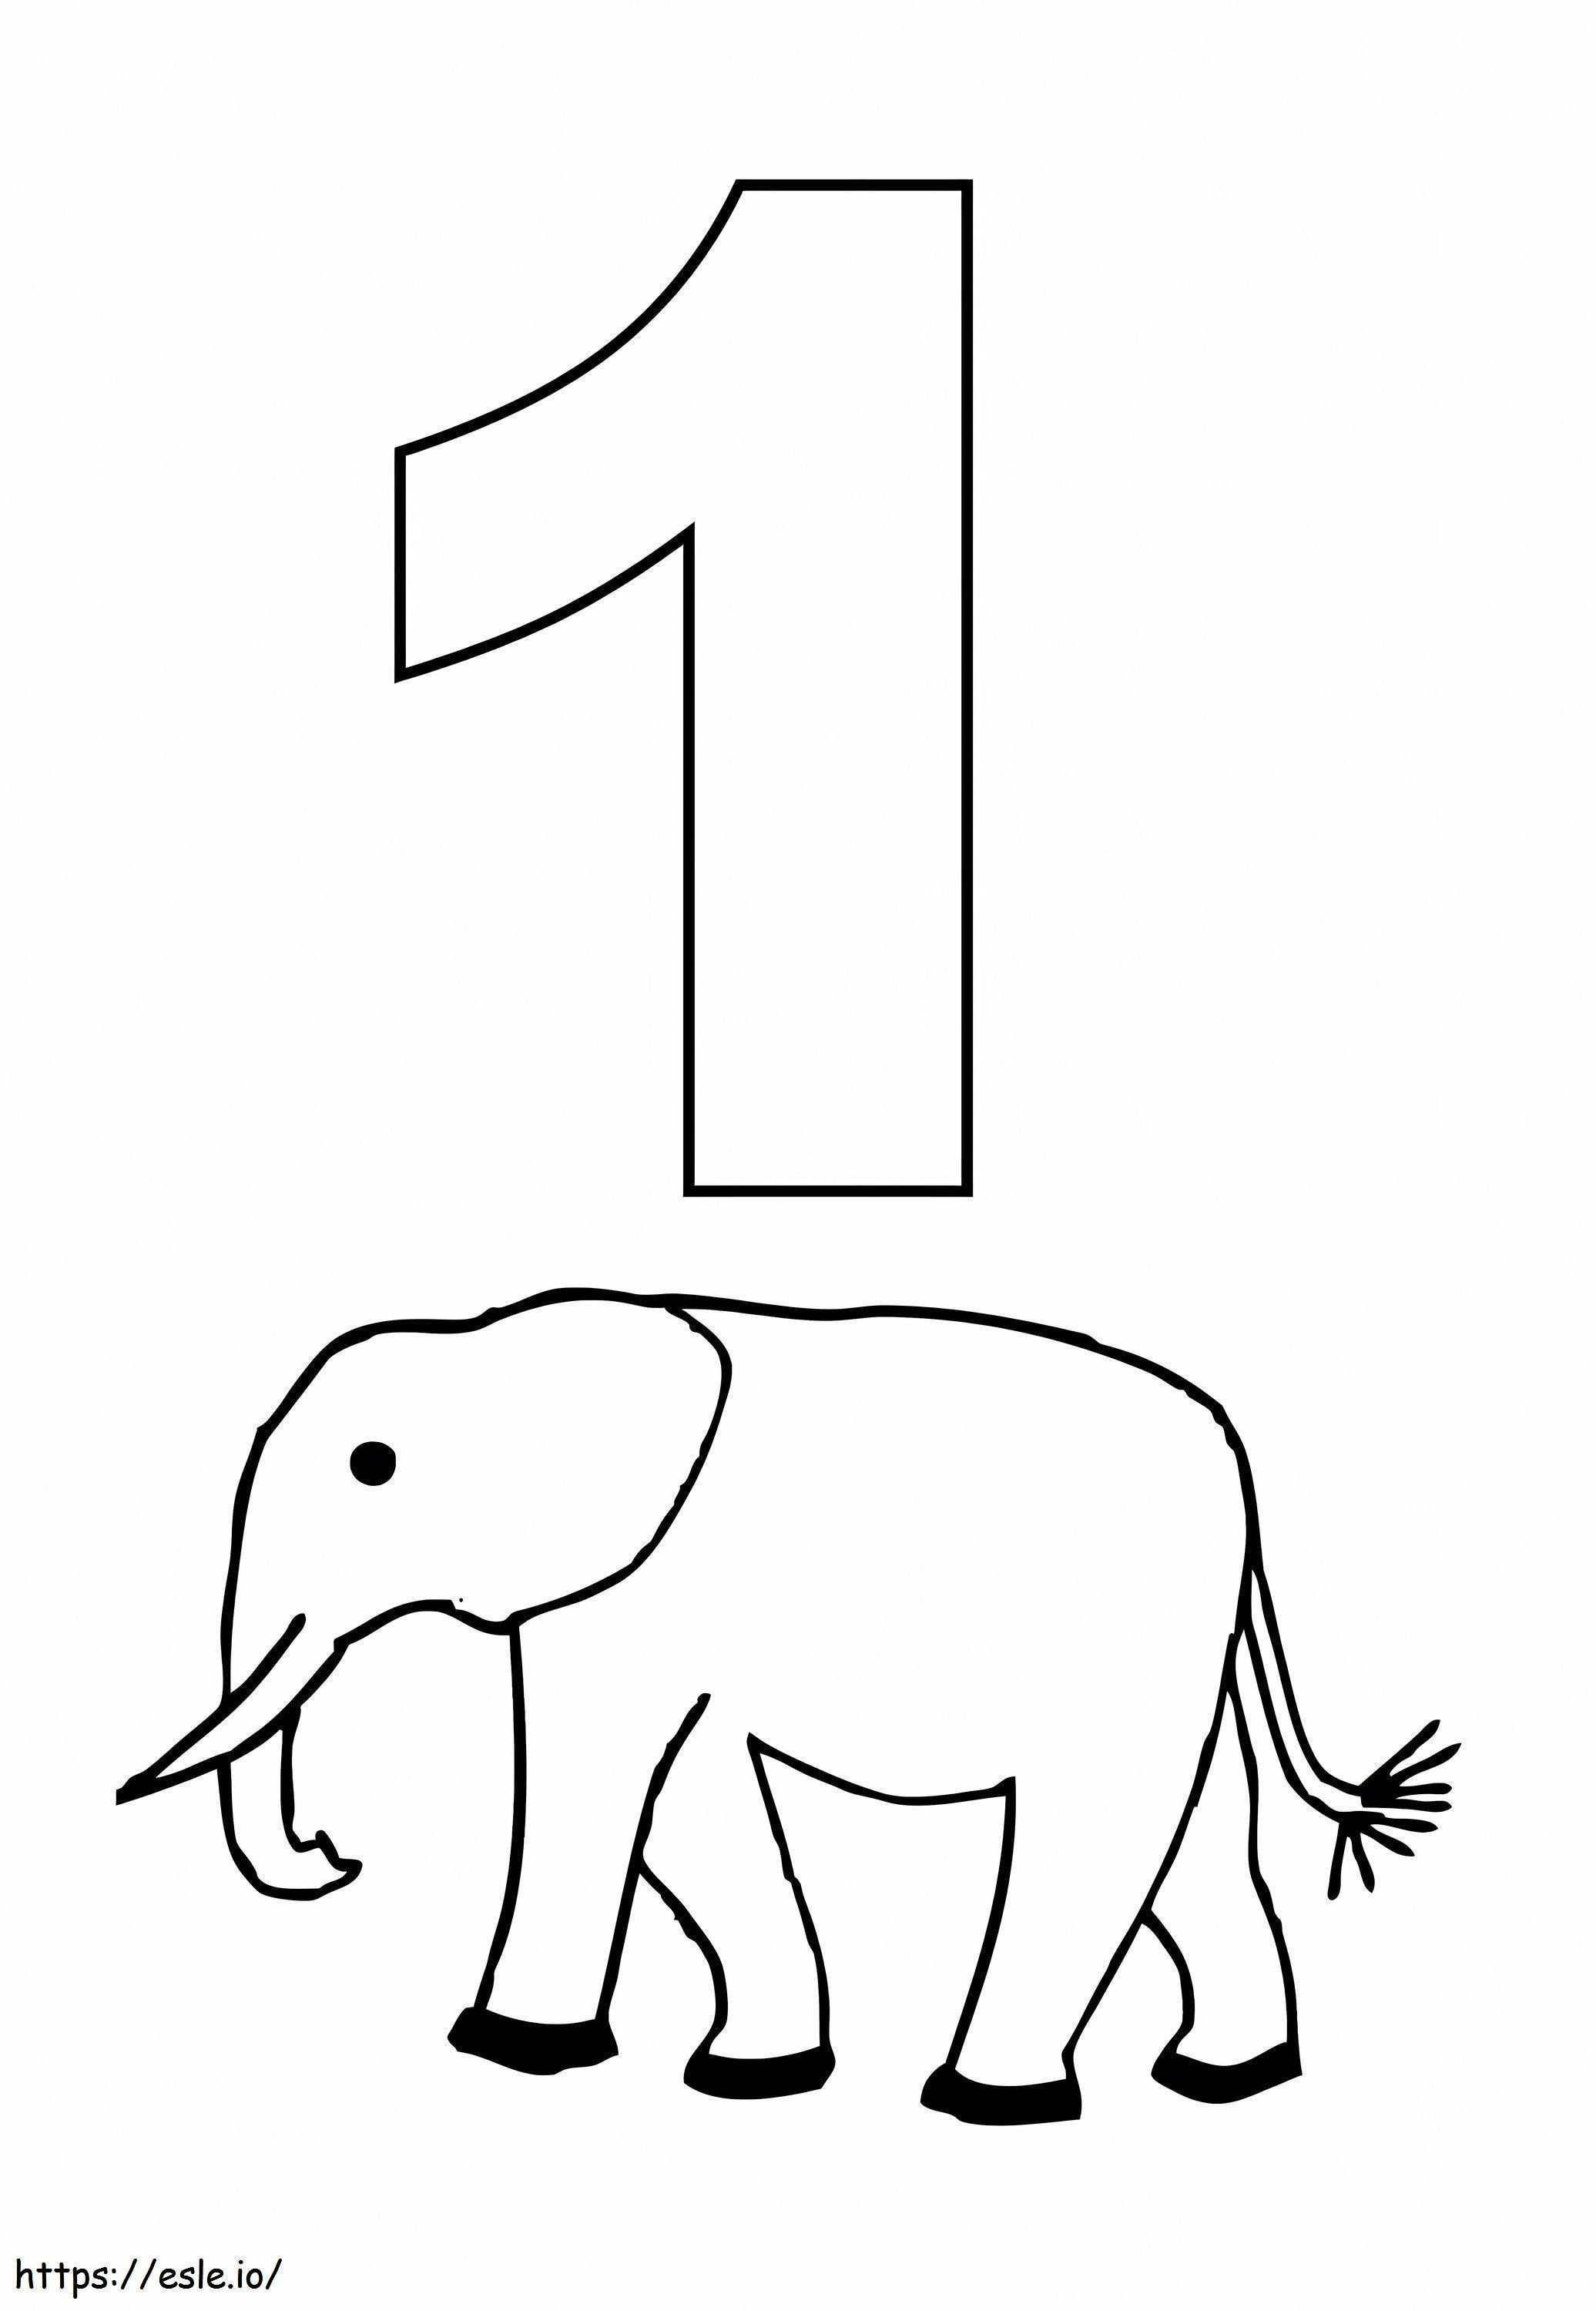 Número 1 e elefante para colorir